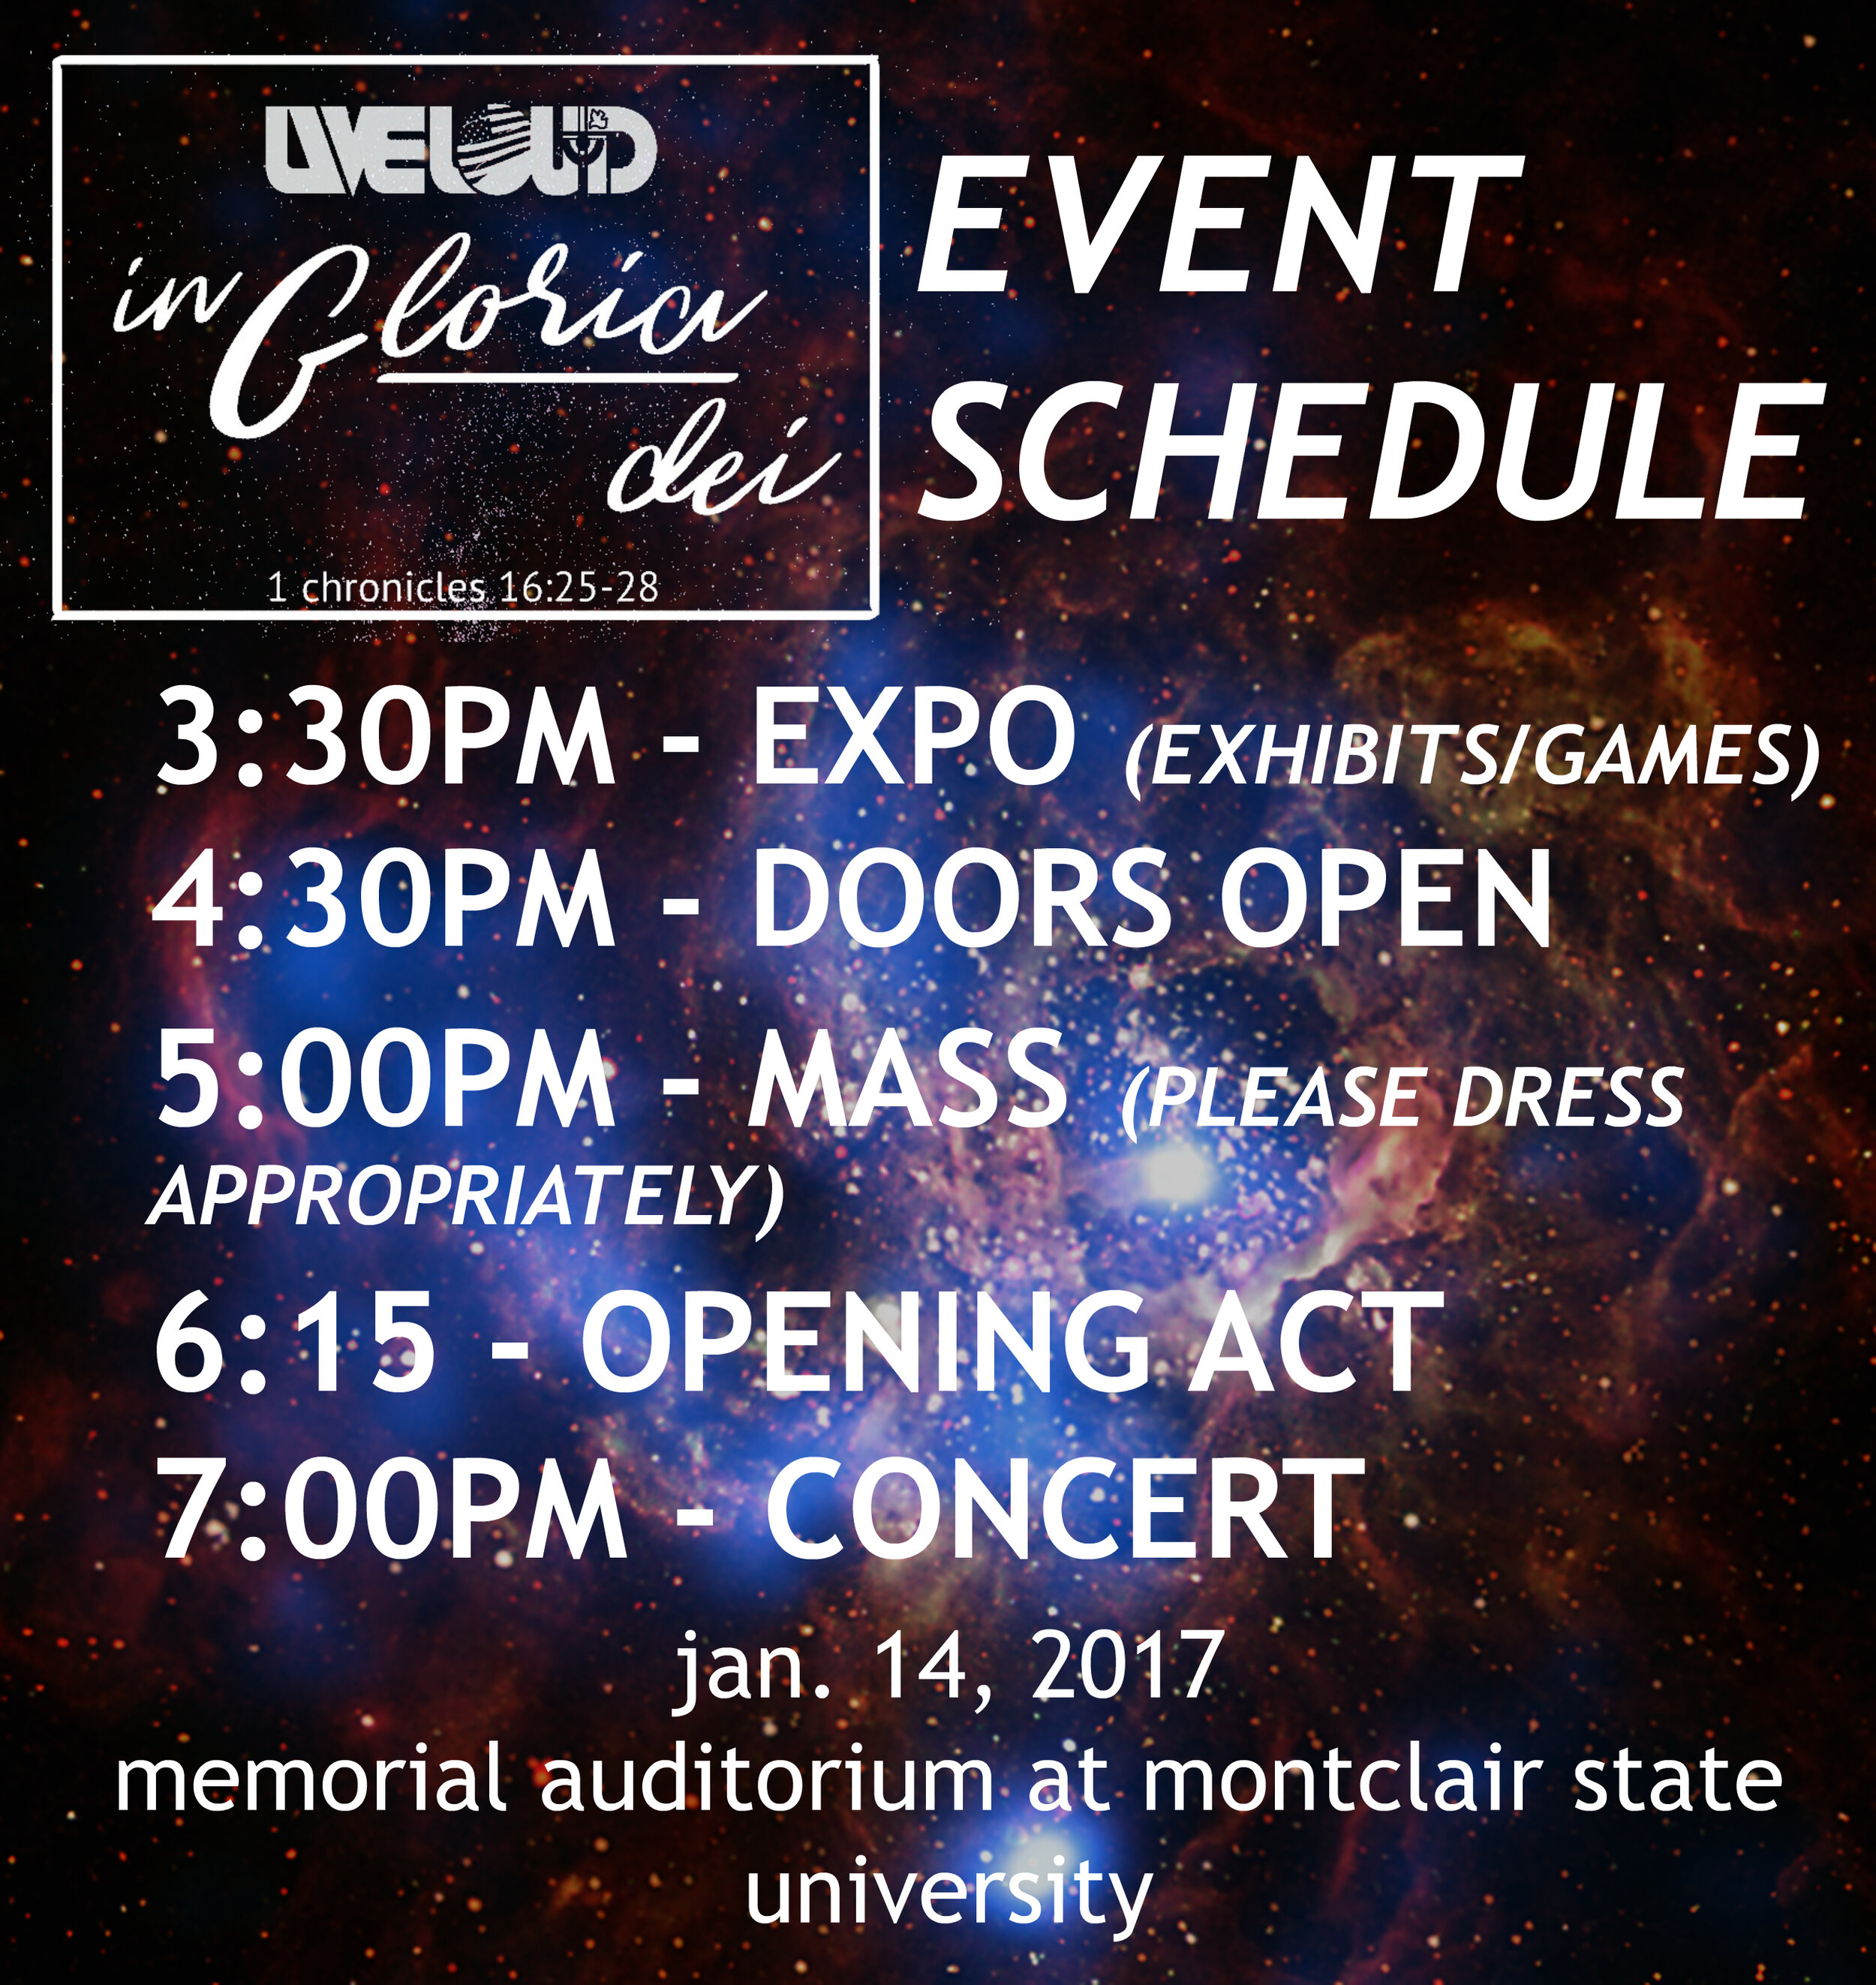 liveloud event schedule 2.jpg